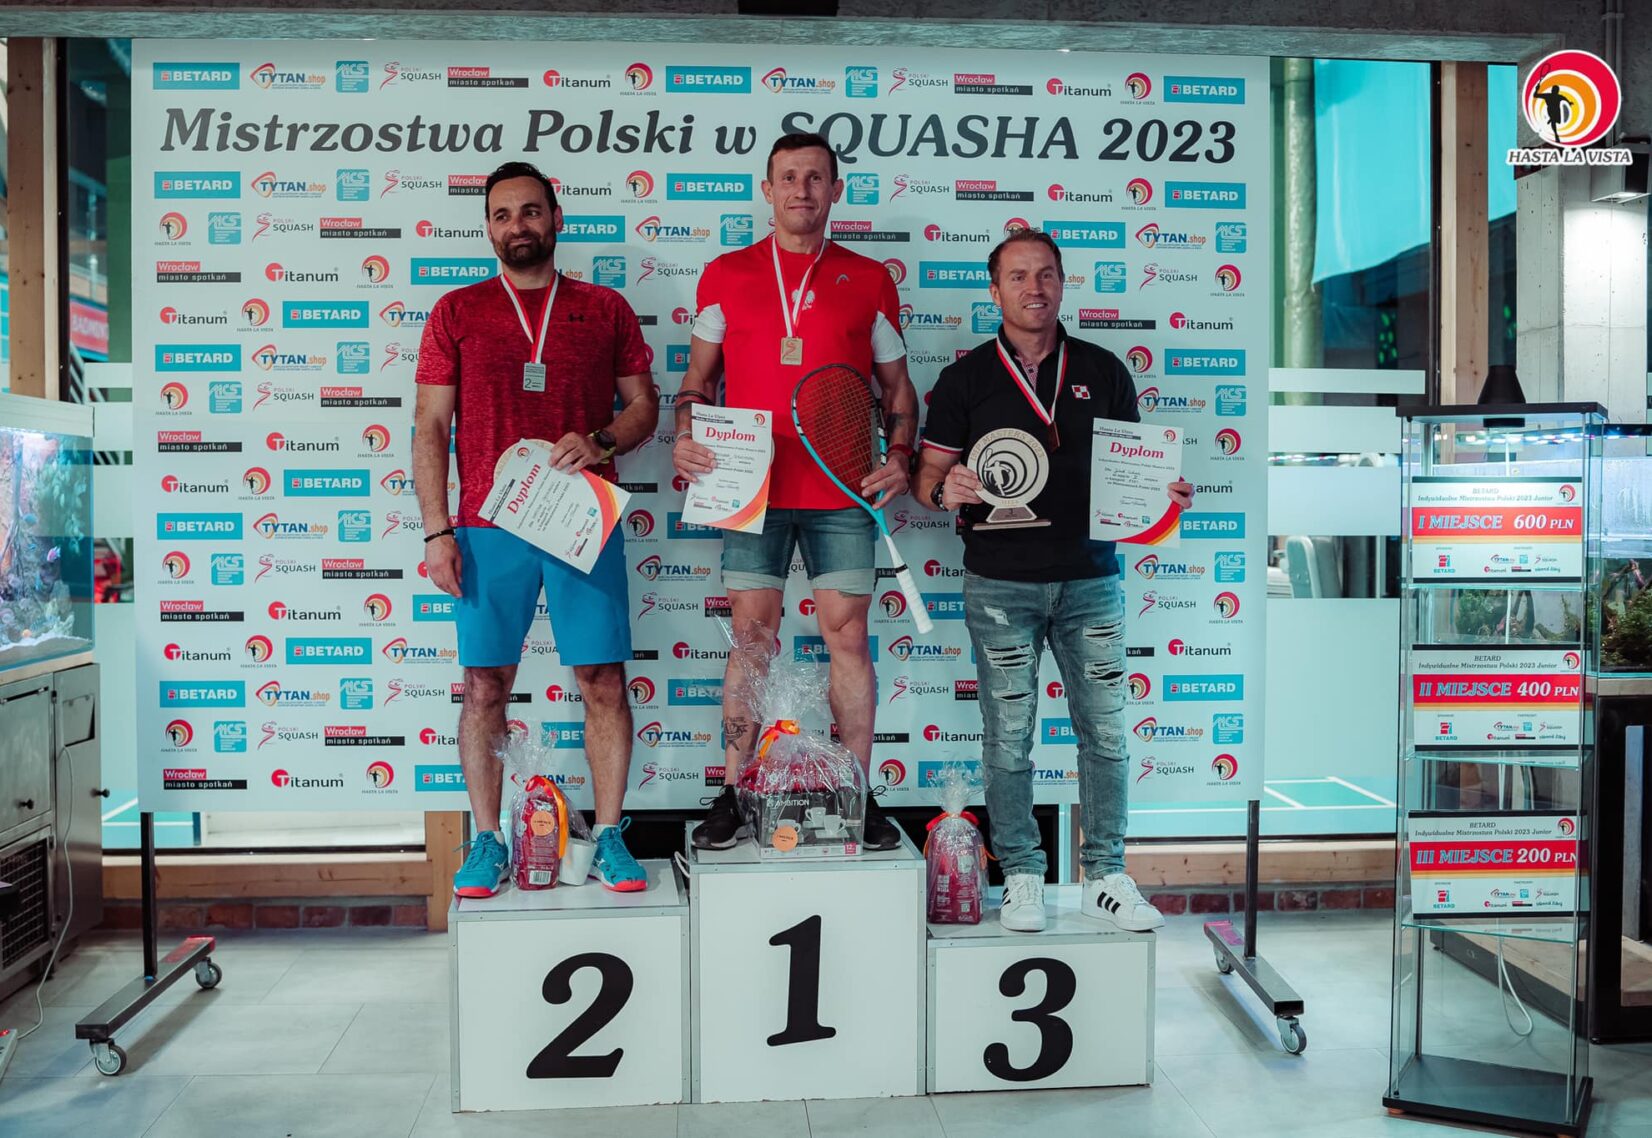 Indywidualne Mistrzostwa Polski Masters 2023 